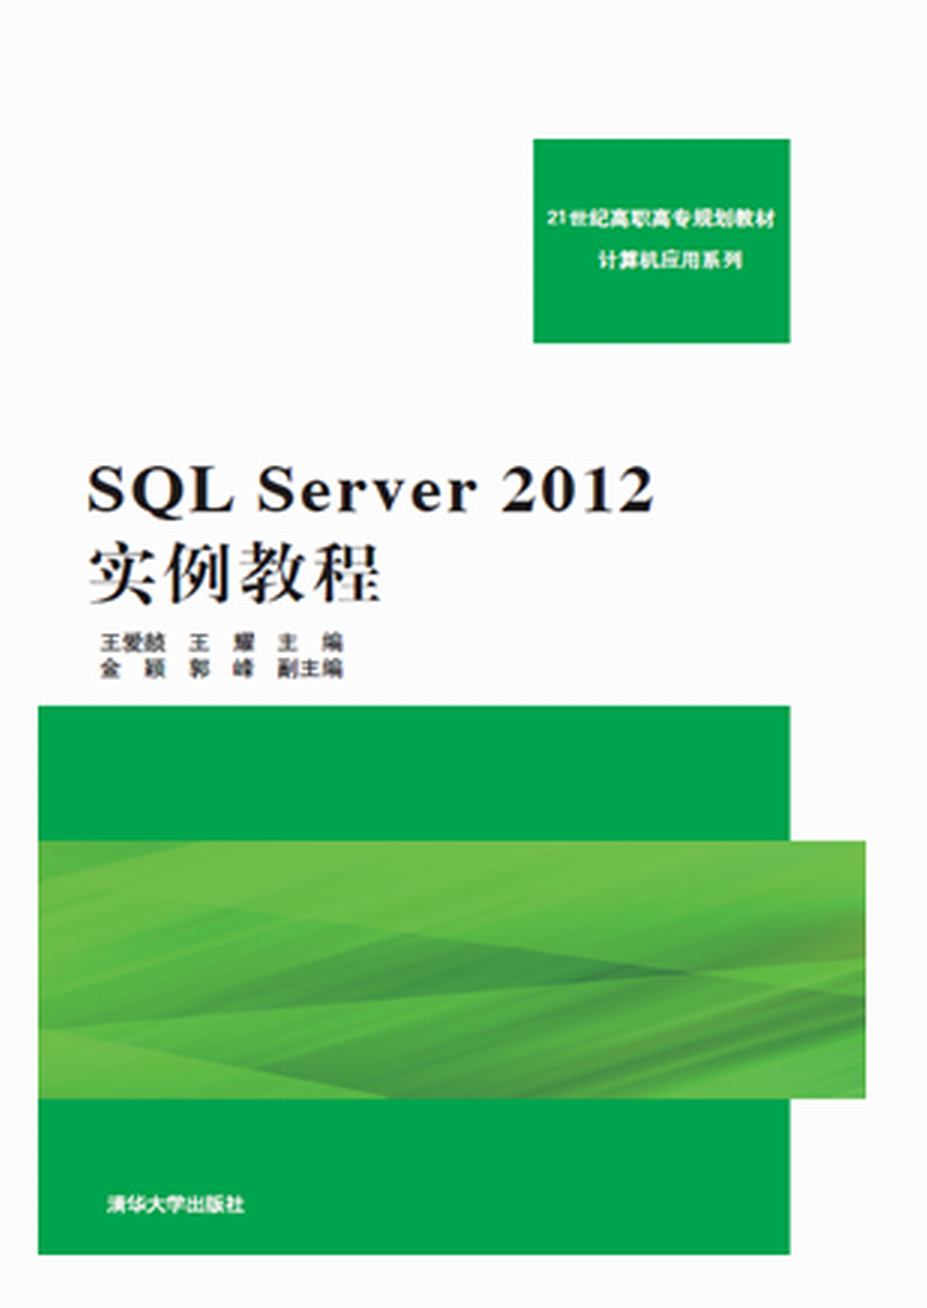 SQL Server 2012實例教程